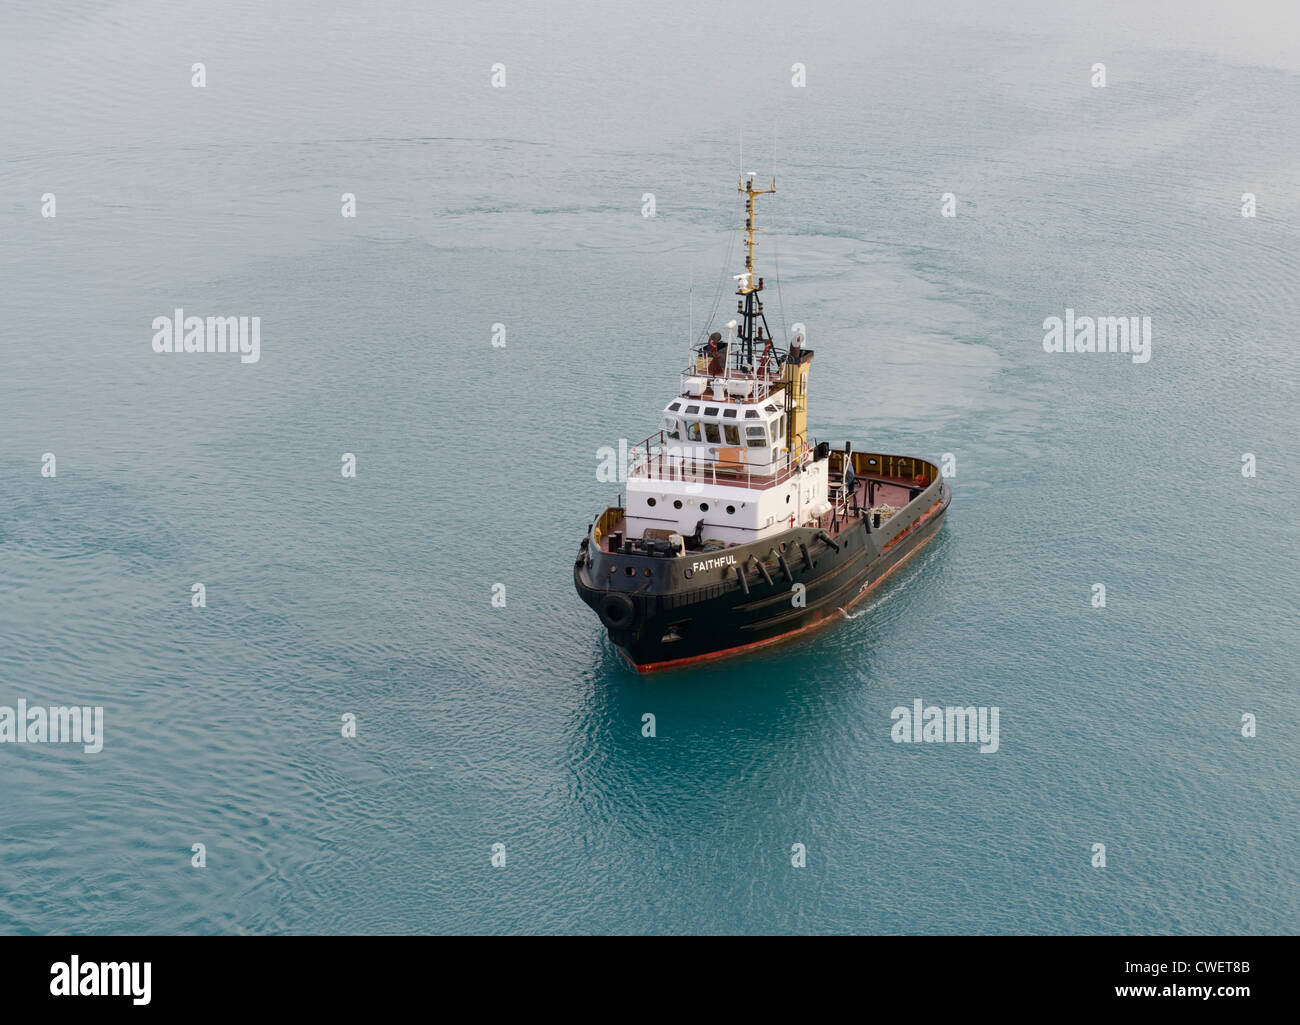 Tug boat, Bermuda Stock Photo